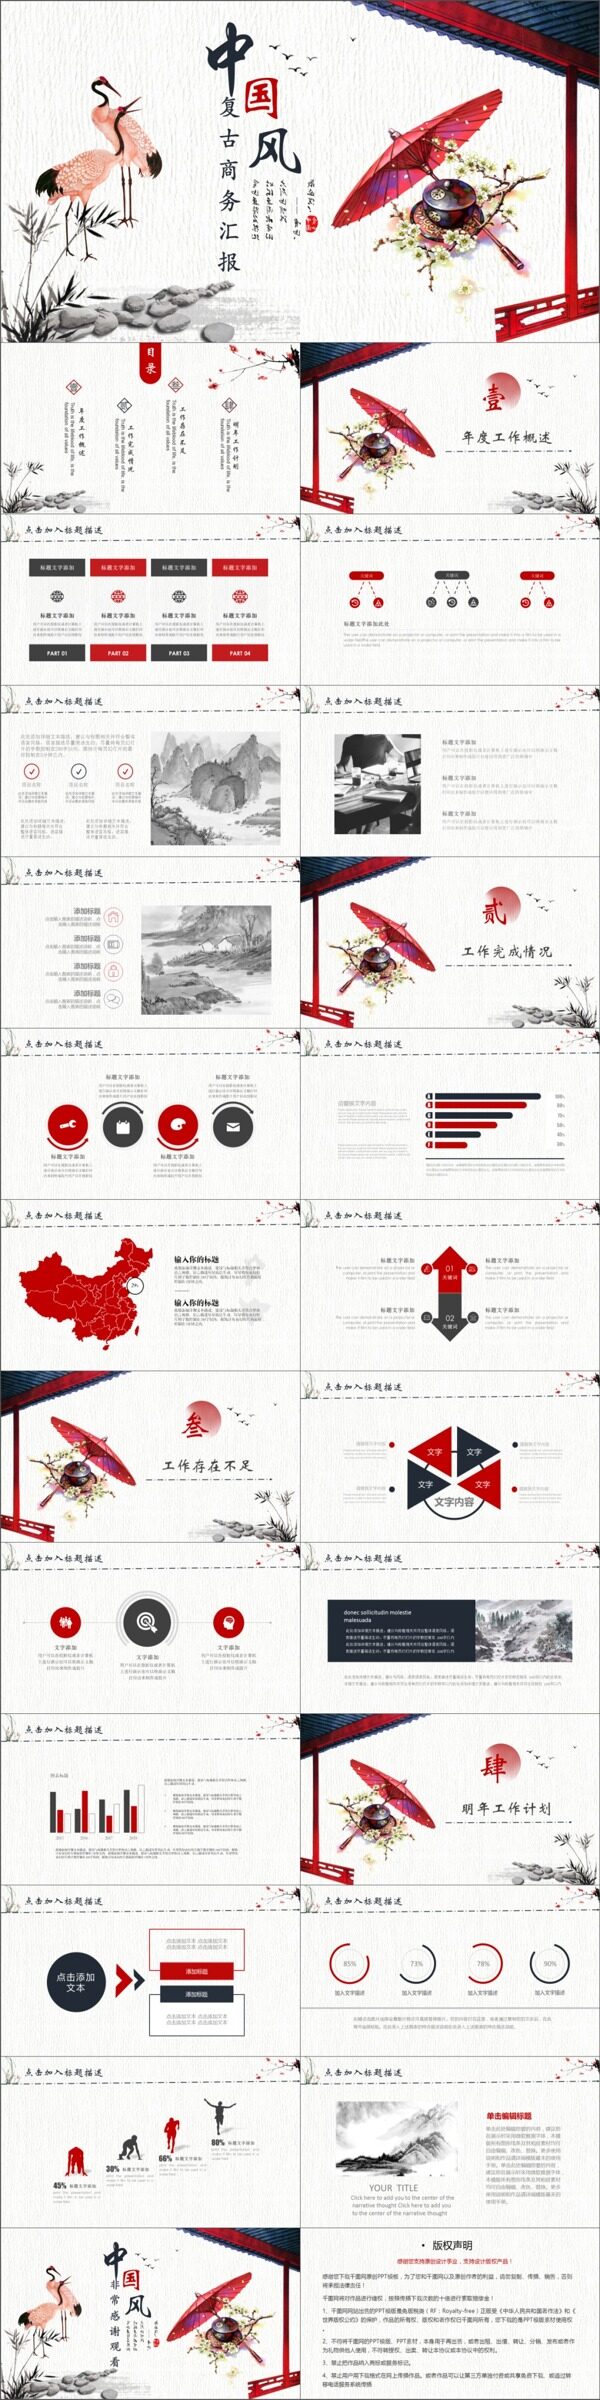 2019红黑色中国风商务汇报PPT模版